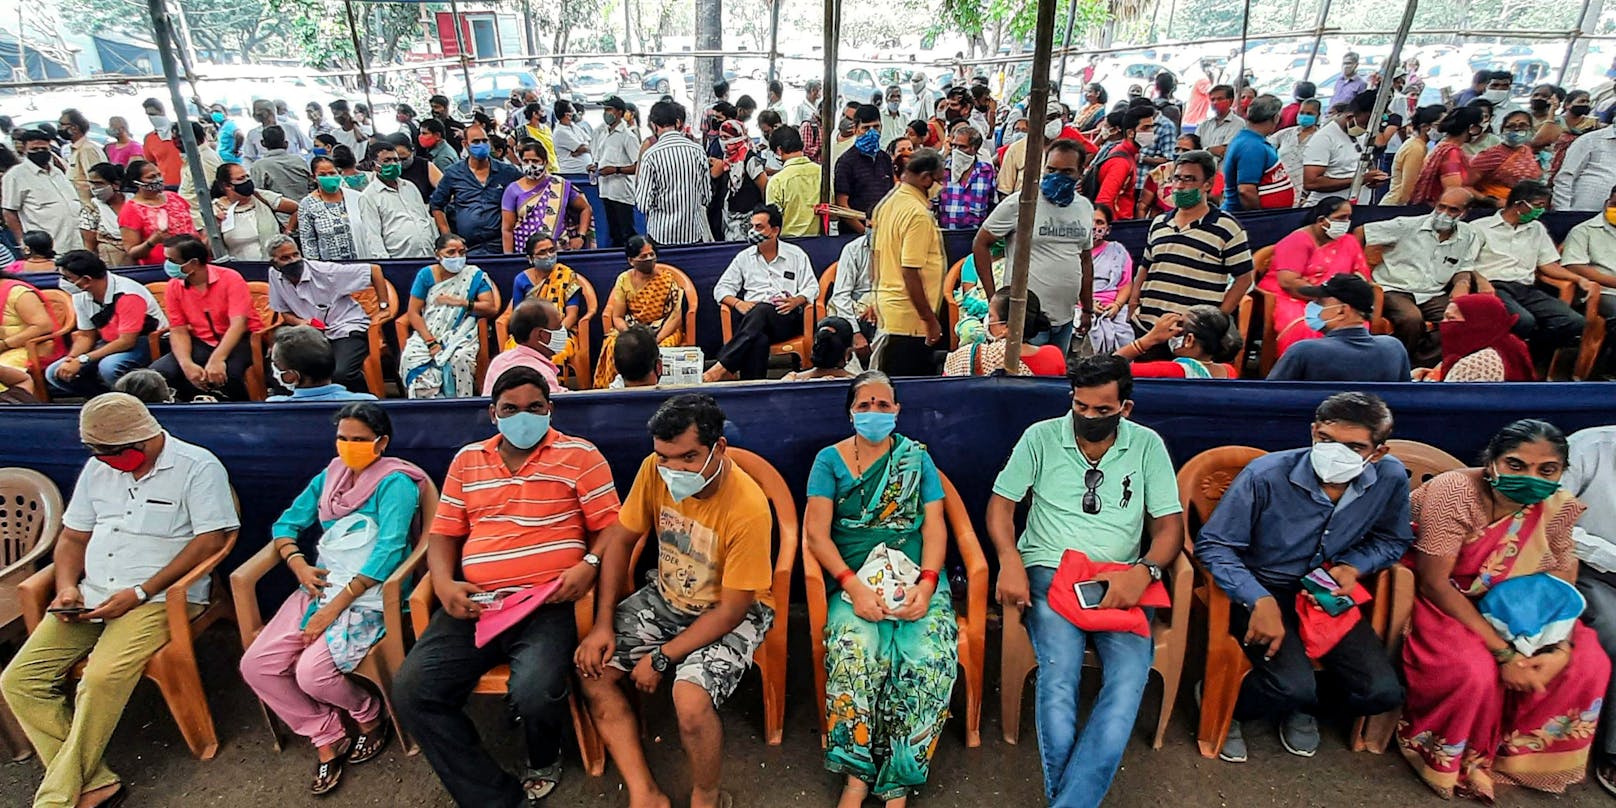 Die Lage in Indien spitzt sich weiter zu. Am Dienstag melden die Behörden 323.144 neue Fälle des Coronavirus.